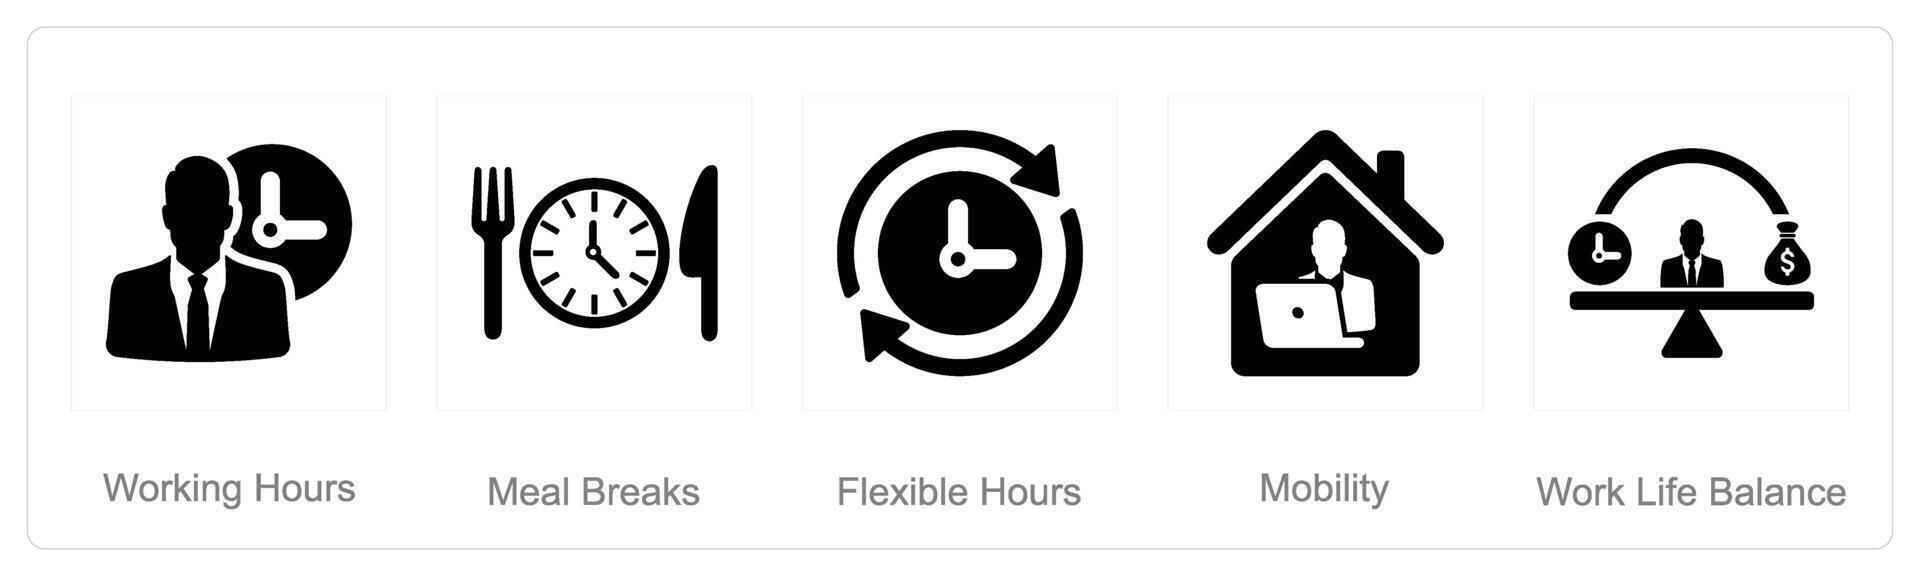 een reeks van 5 werknemer voordelen pictogrammen net zo werken uur, maaltijd pauzes, flexibel uren vector